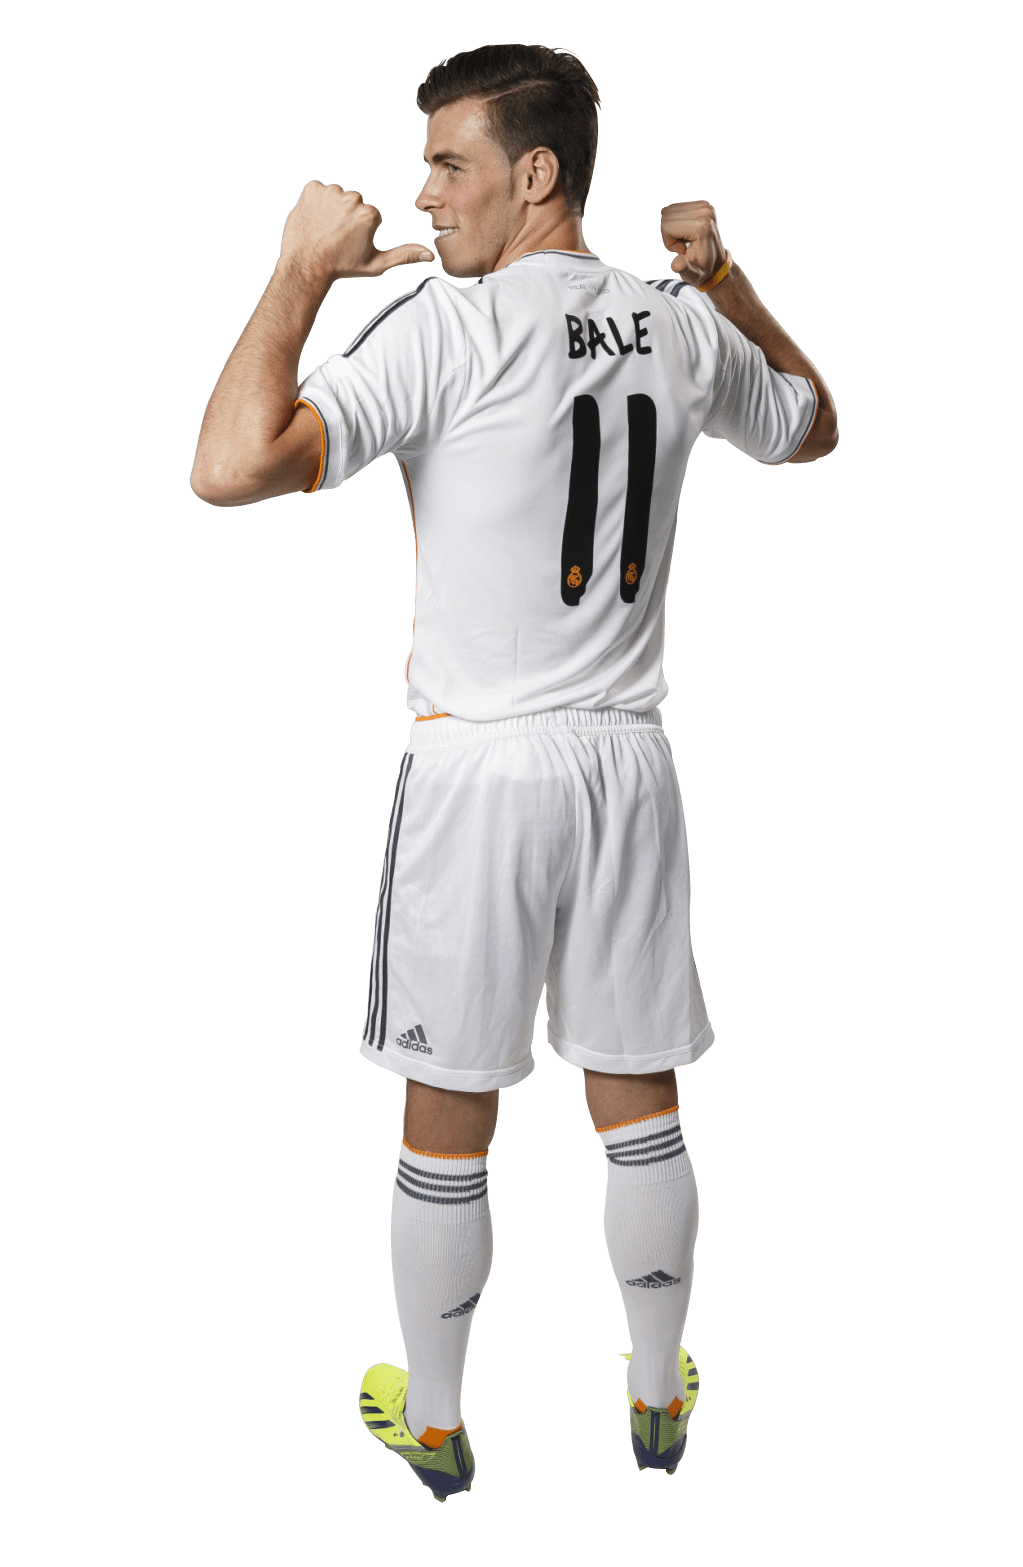 Gareth Bale Footballer PNG Image